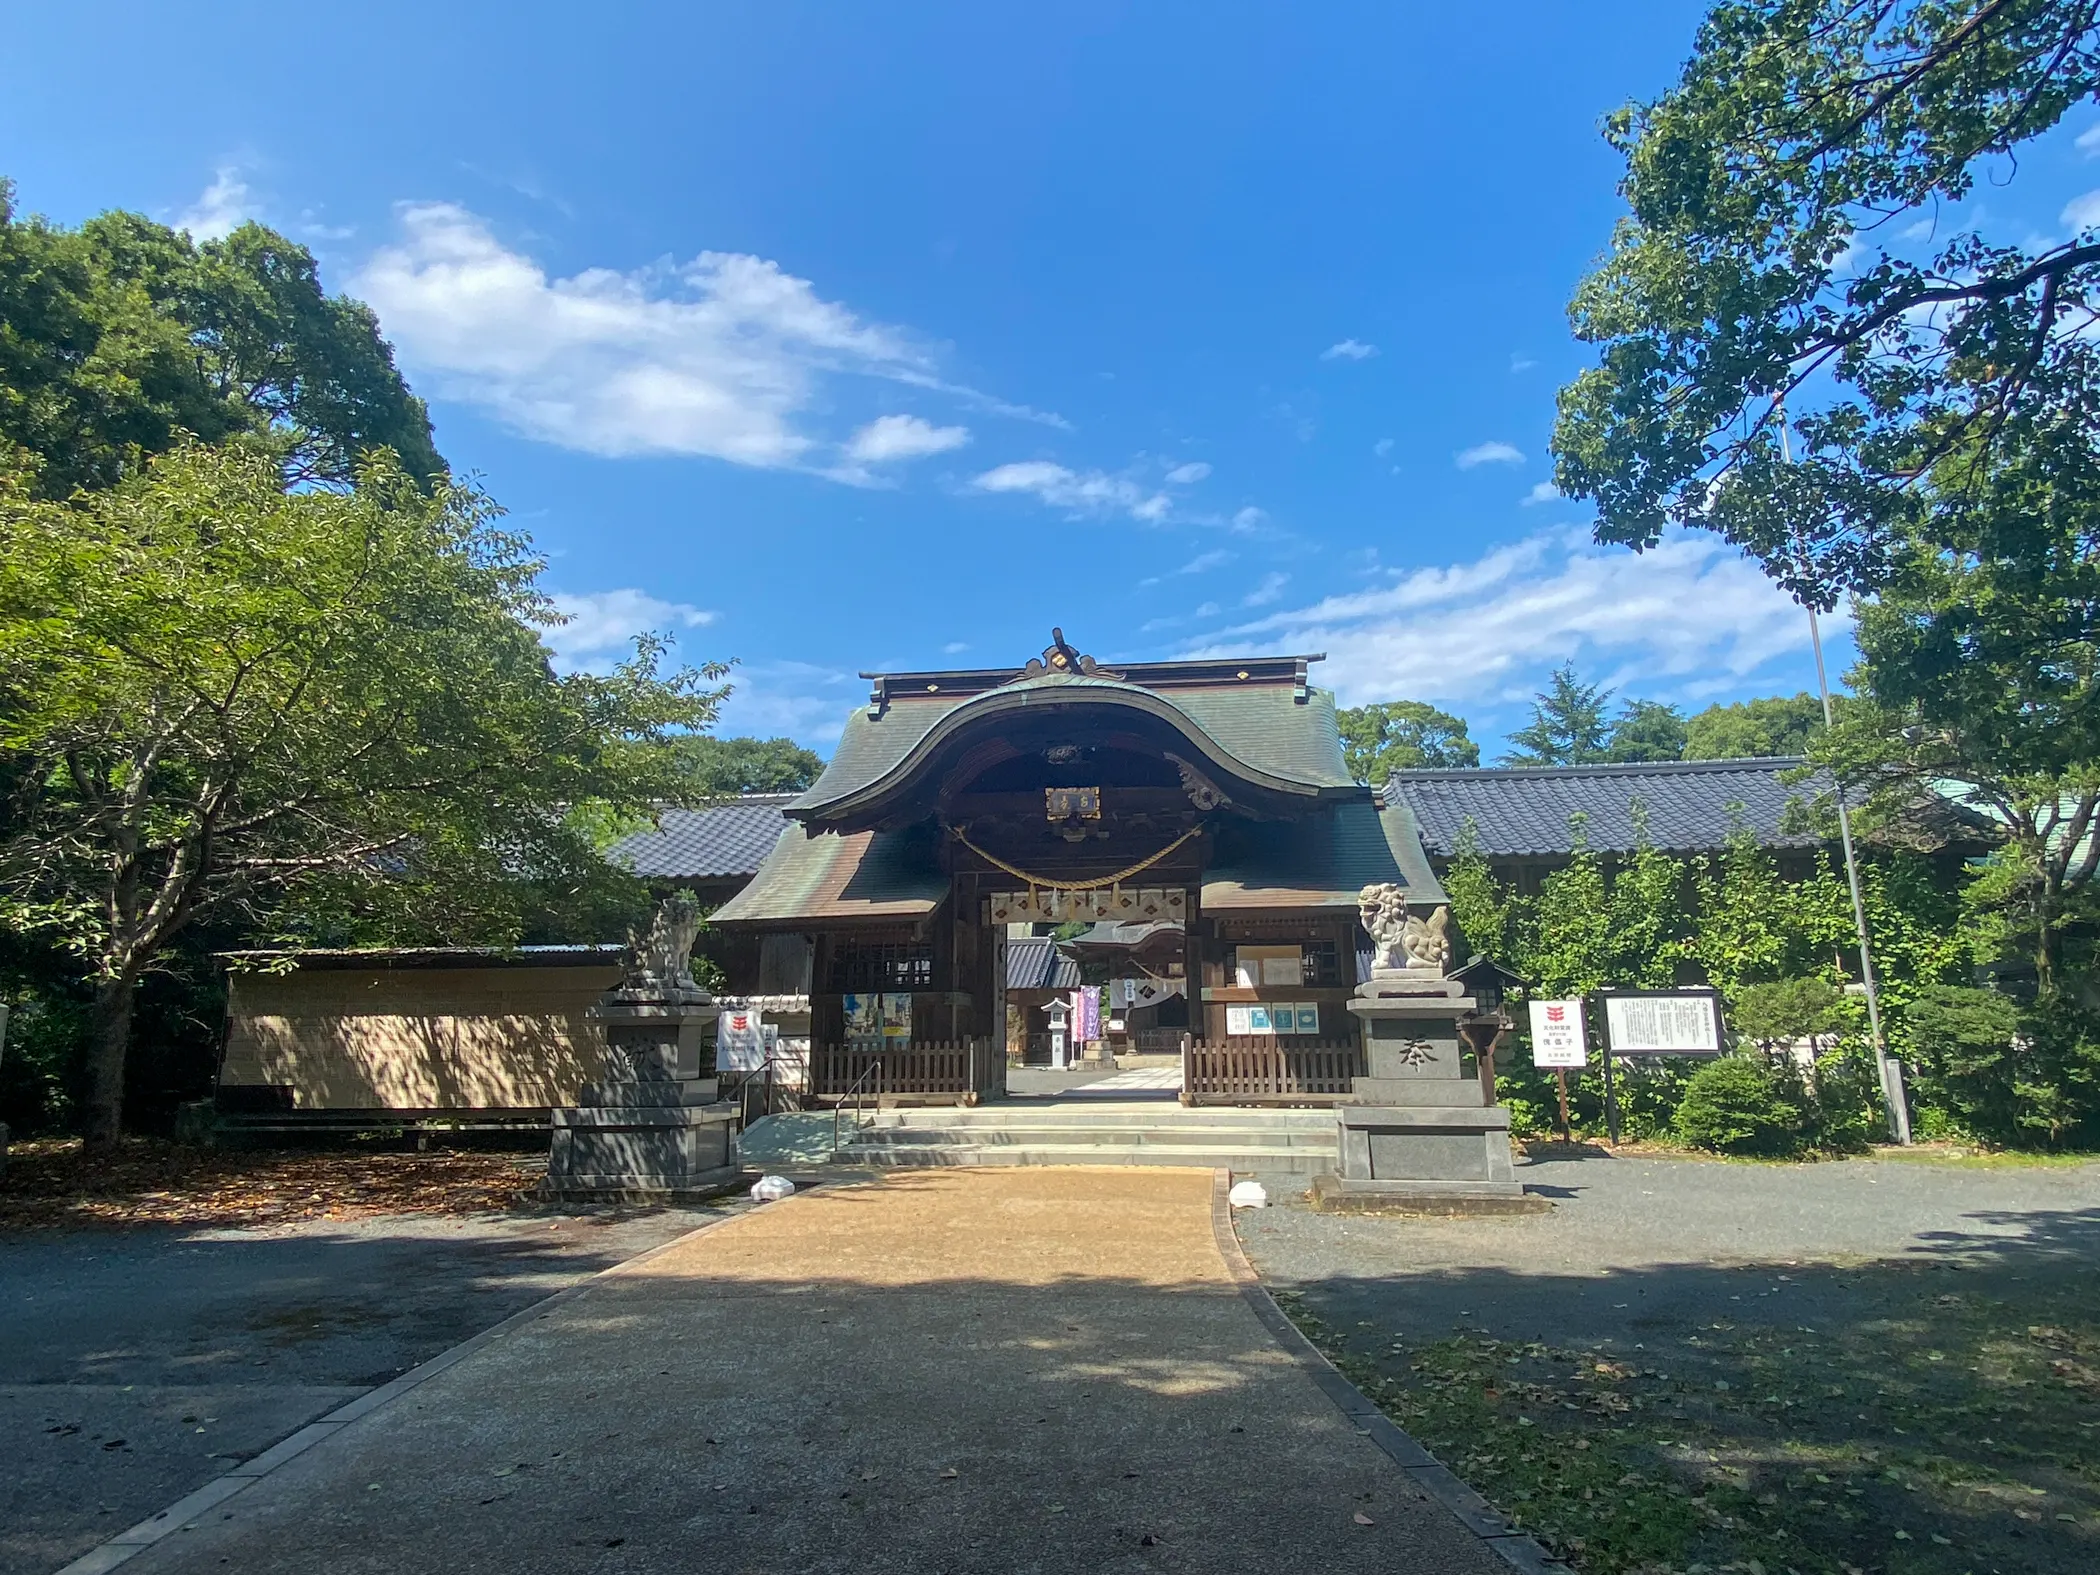 神相撲が行われる数少ない神社「八幡古表神社」